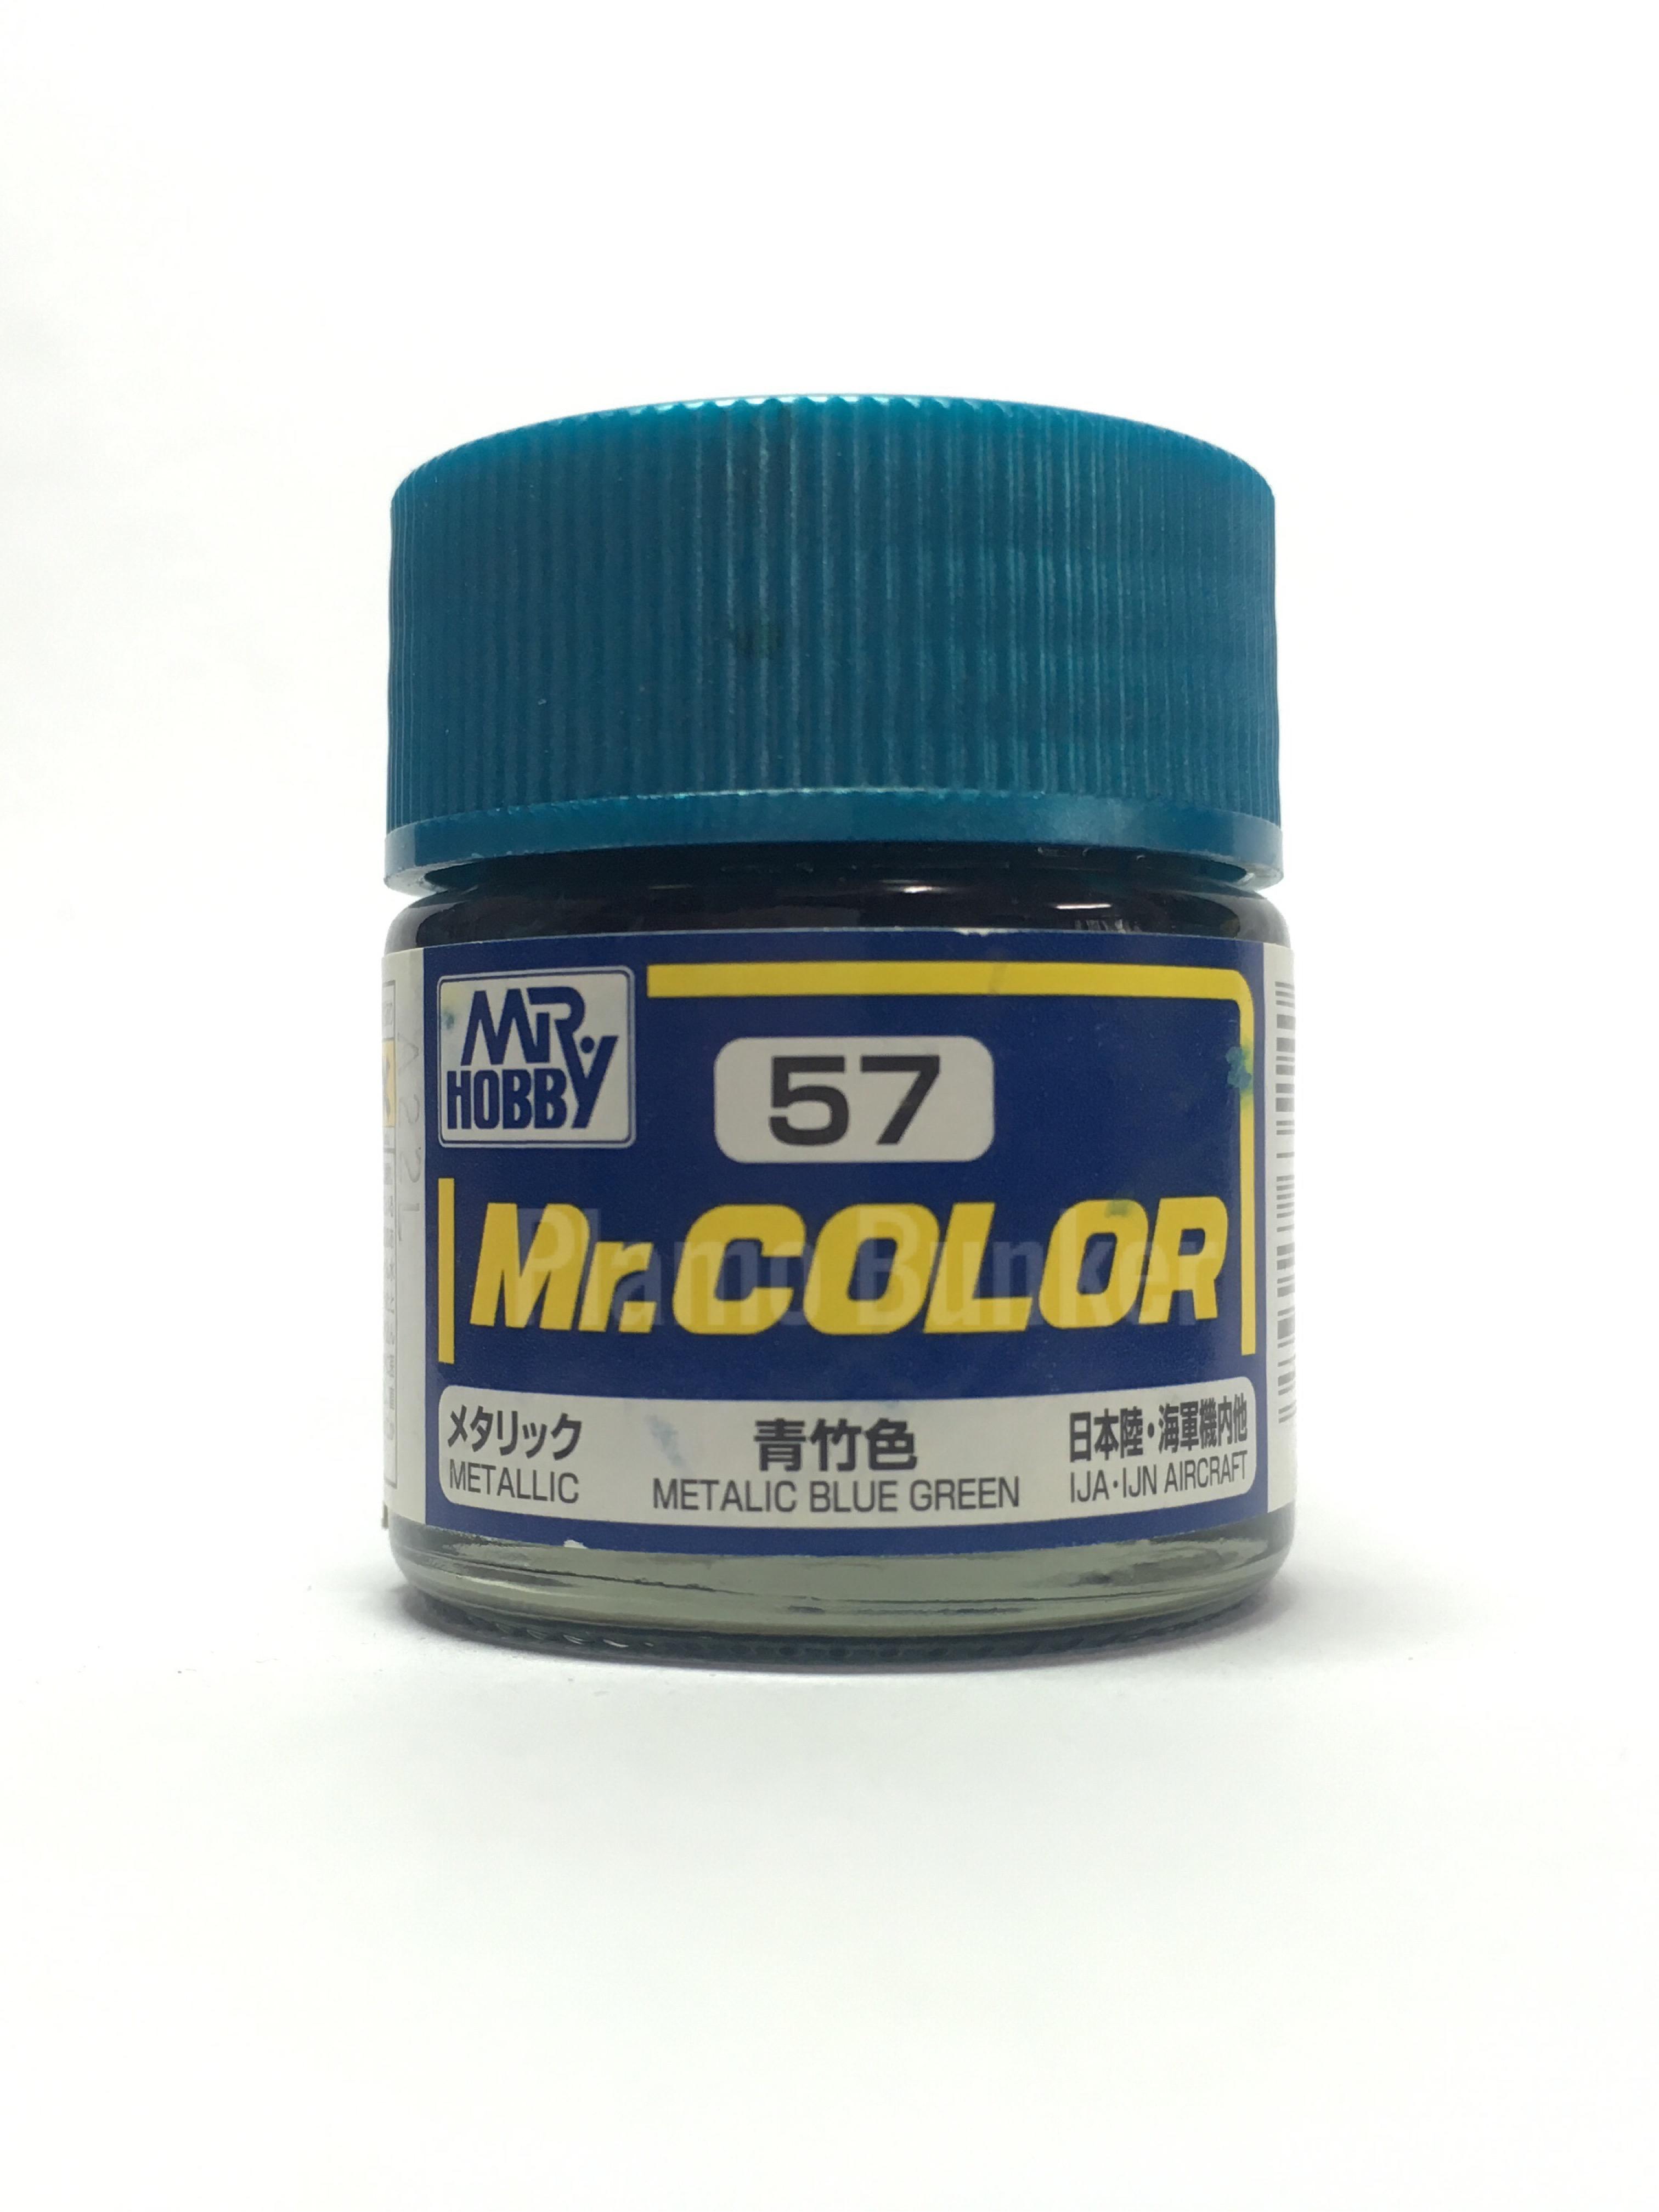 สีMr.Color C51 - C63